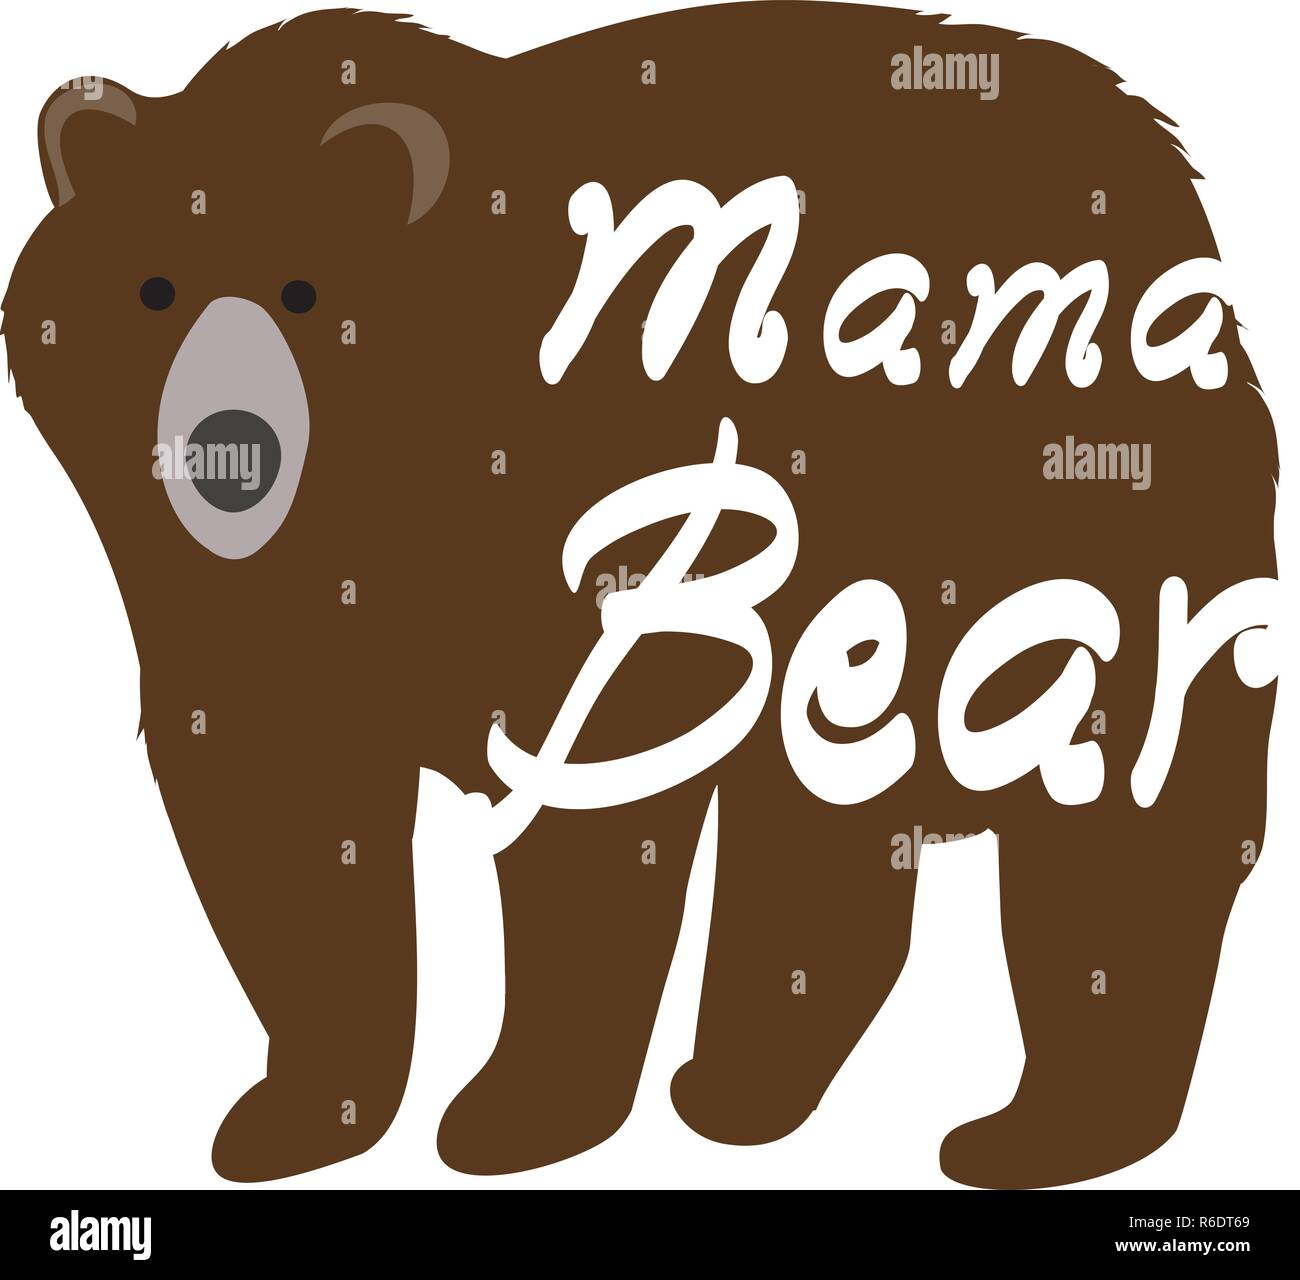 Mama Bear Head